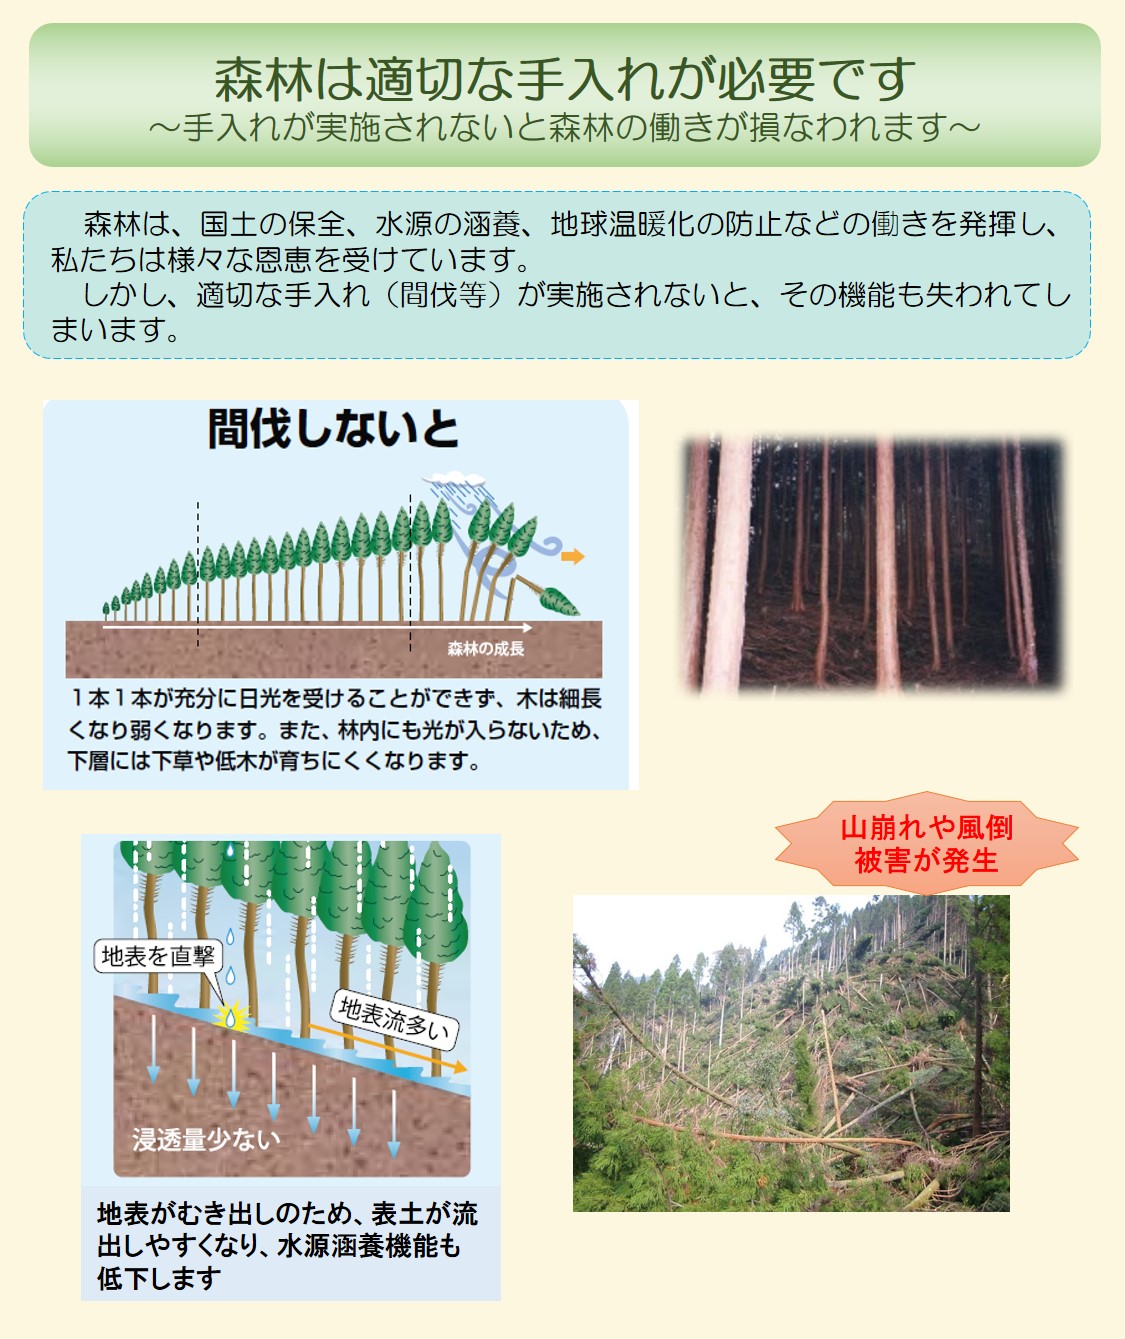 森林整備の必要性について